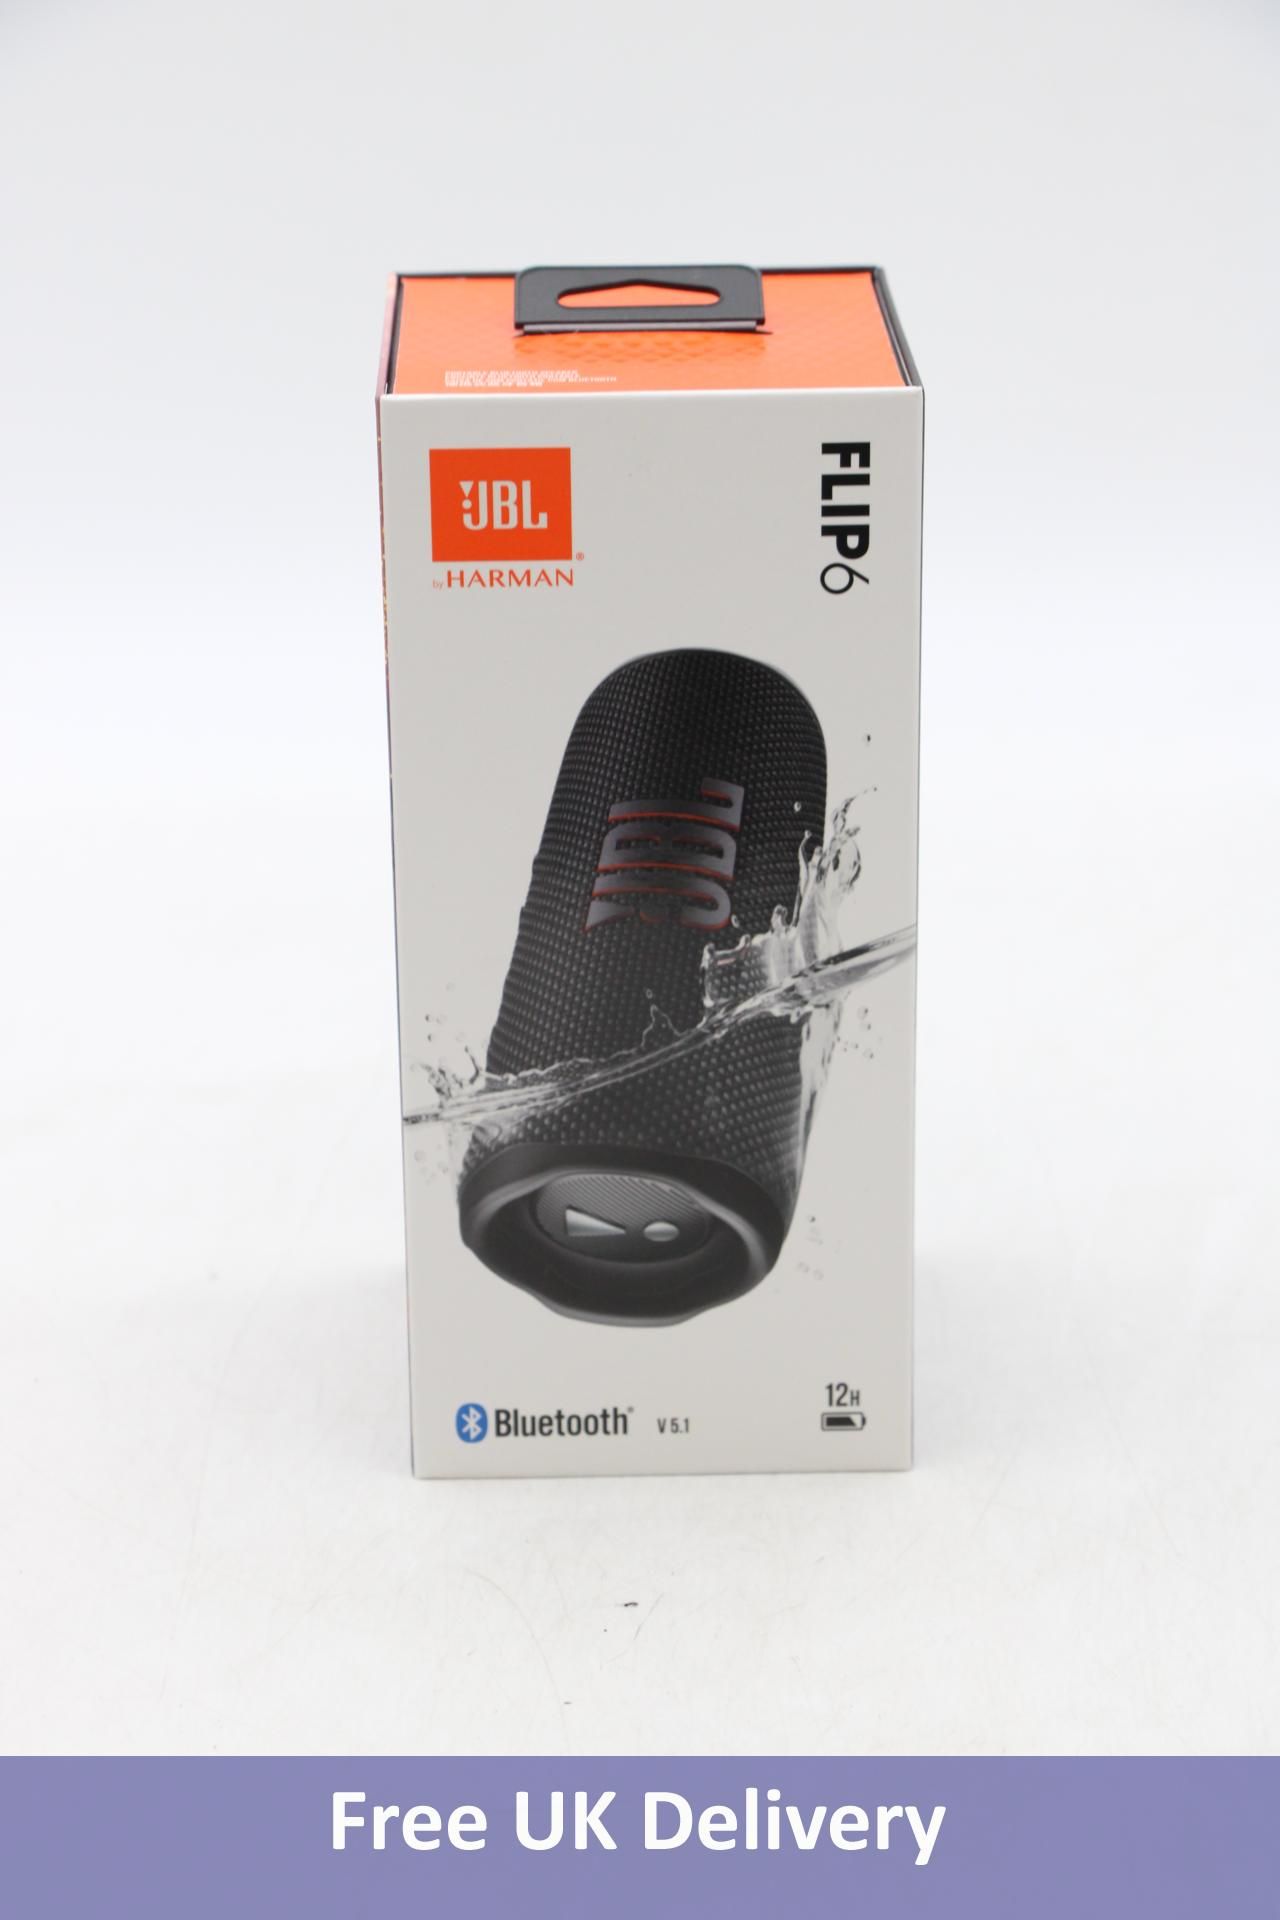 JBL Flip 6 Portable Waterproof Speaker, Black